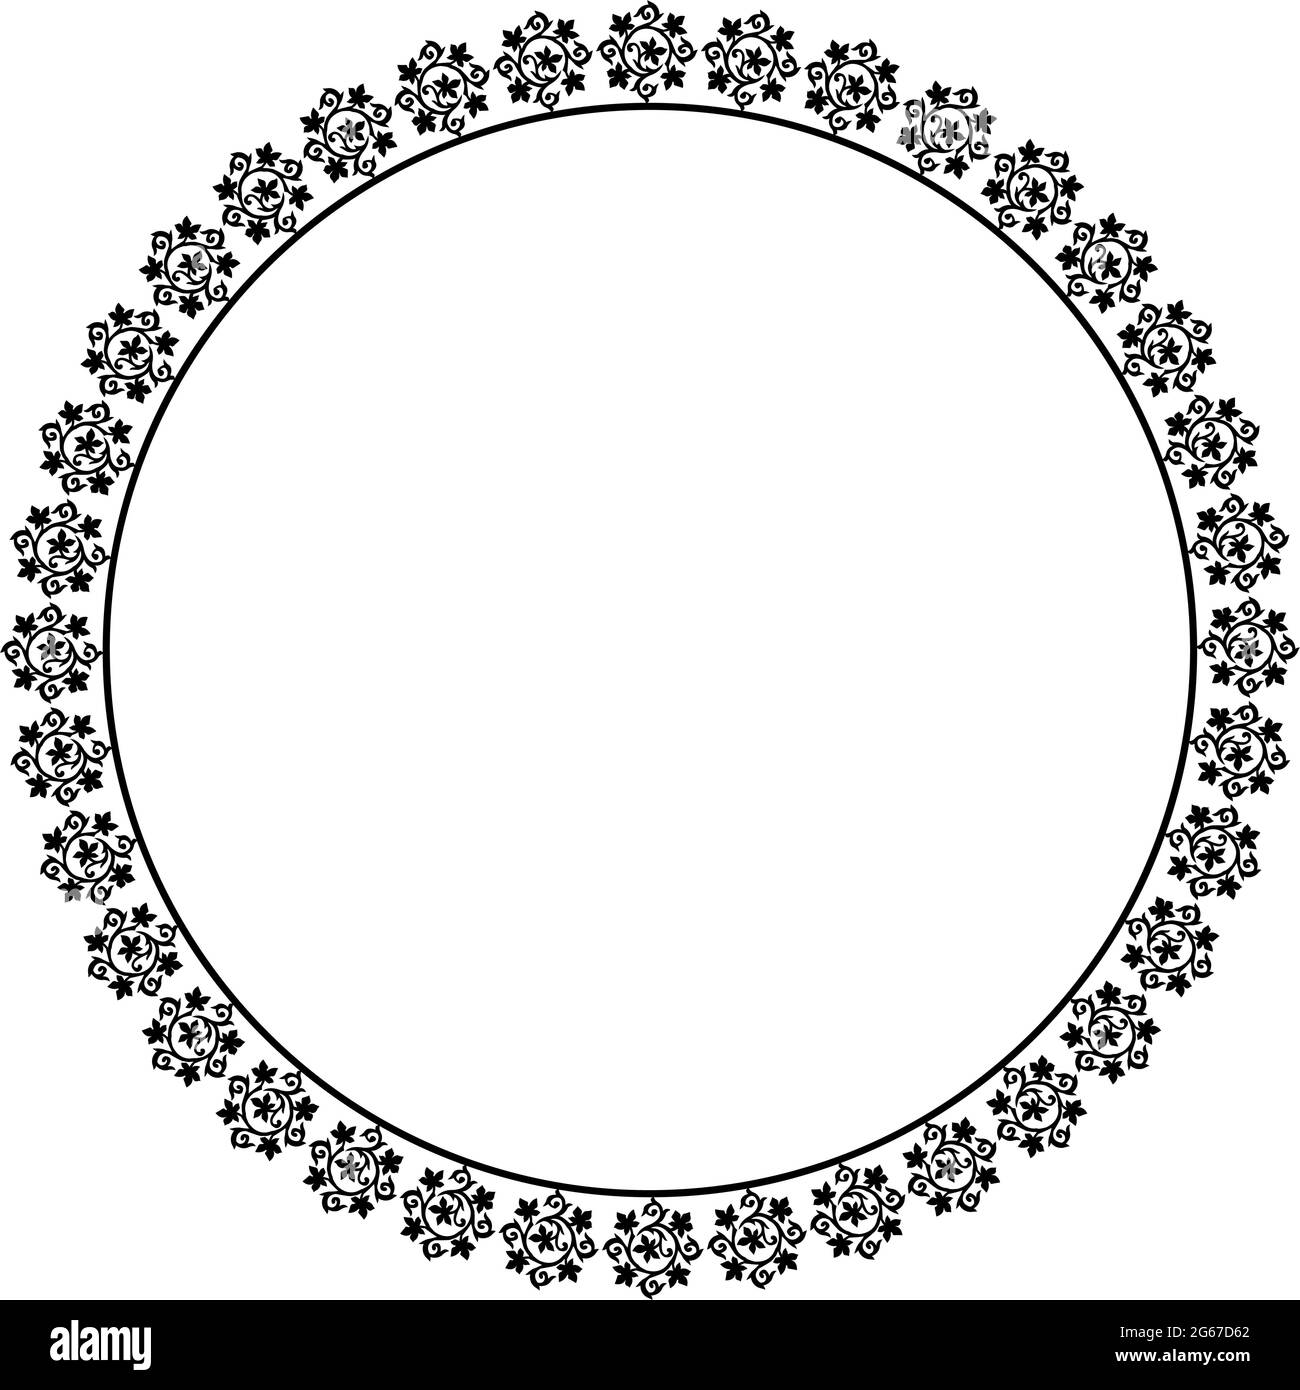 Cadre miroir rond concept d'art floral isolé sur fond blanc Illustration de Vecteur